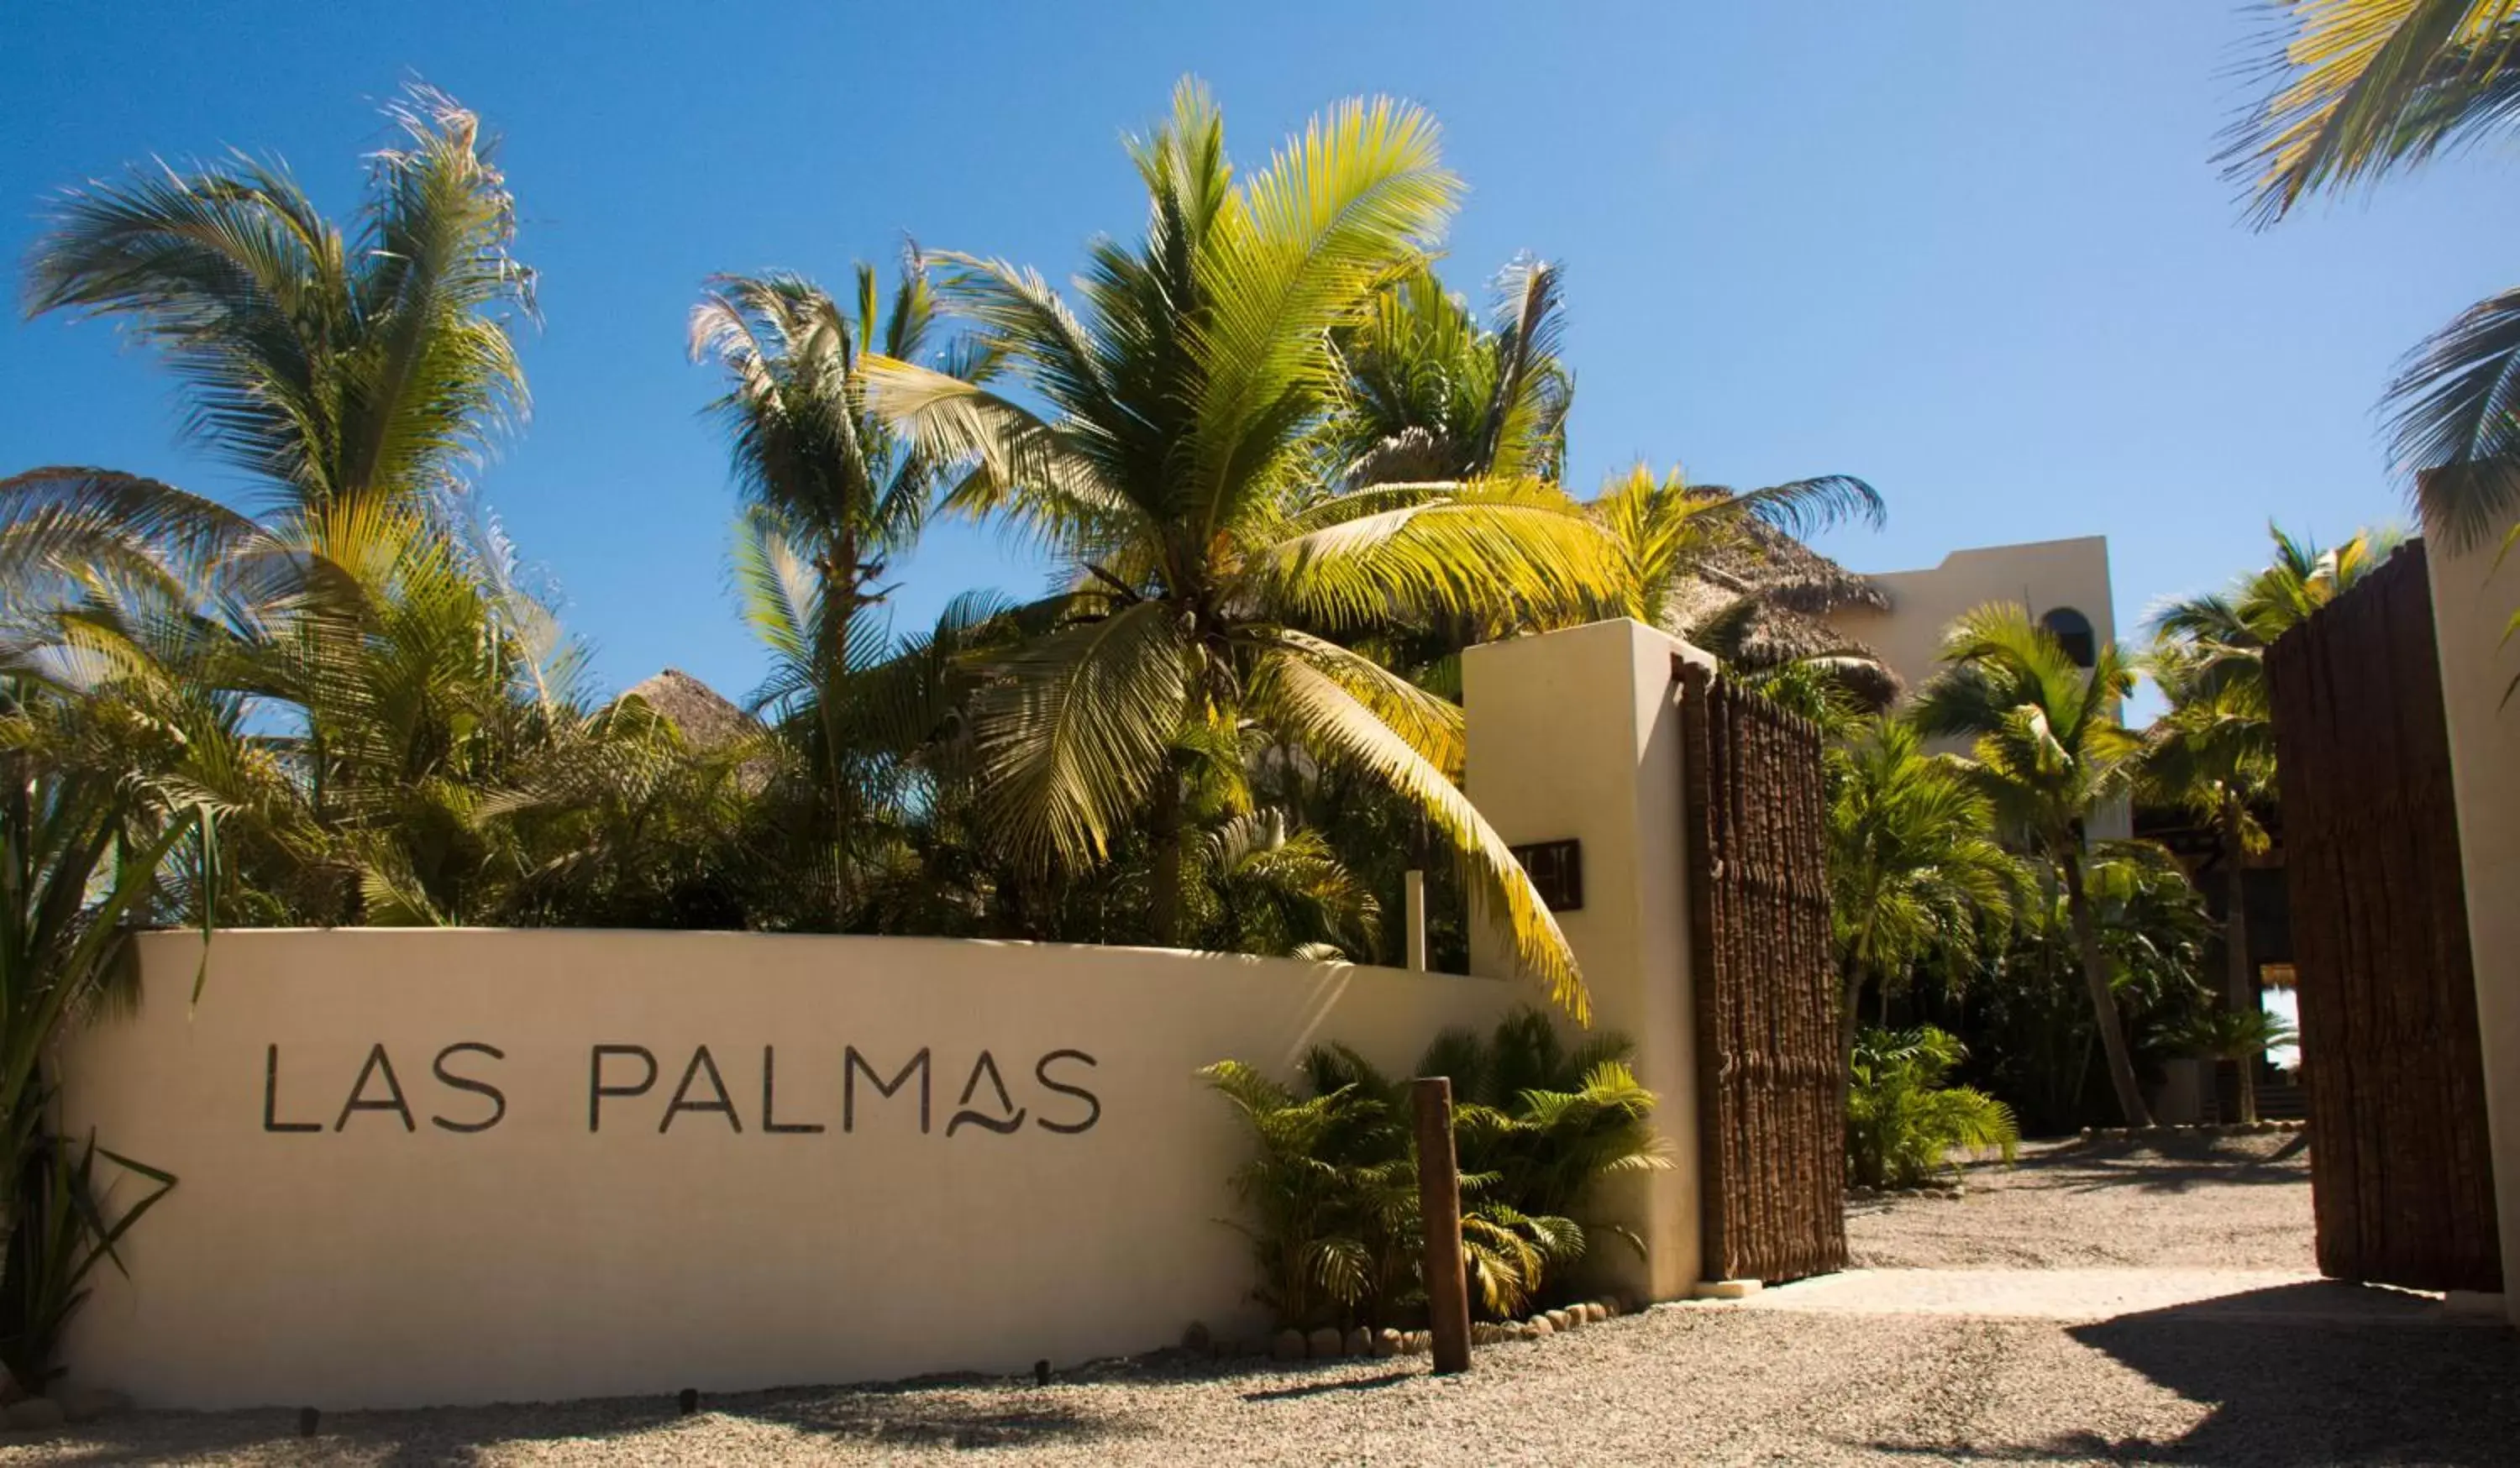 Property Building in Las Palmas Luxury Villas